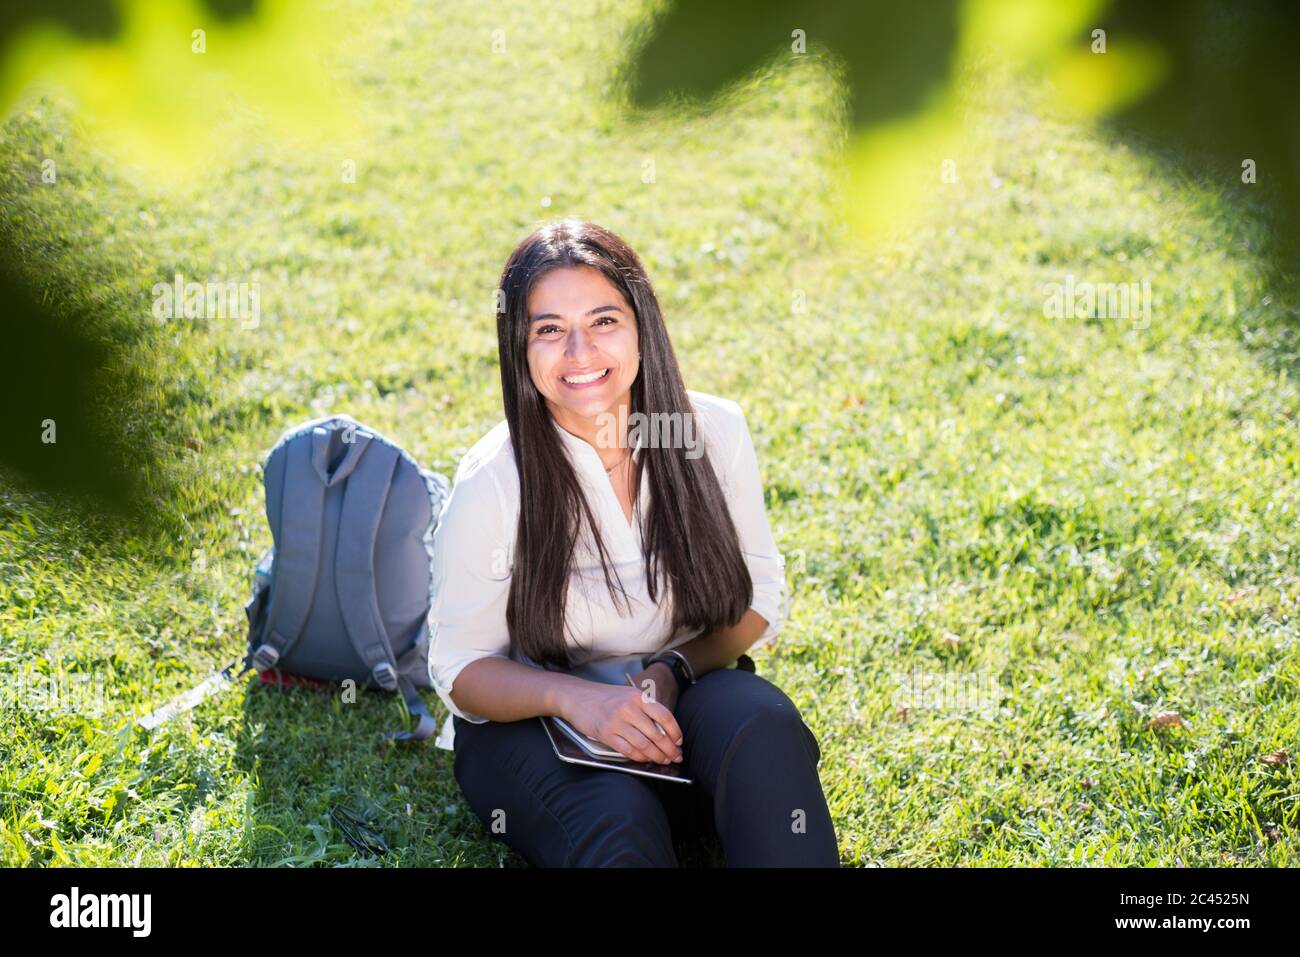 Une fille indienne, étudiante, sourit, s'assoit sur l'herbe verte, avec un sac à dos et un bloc-notes, écrit Banque D'Images